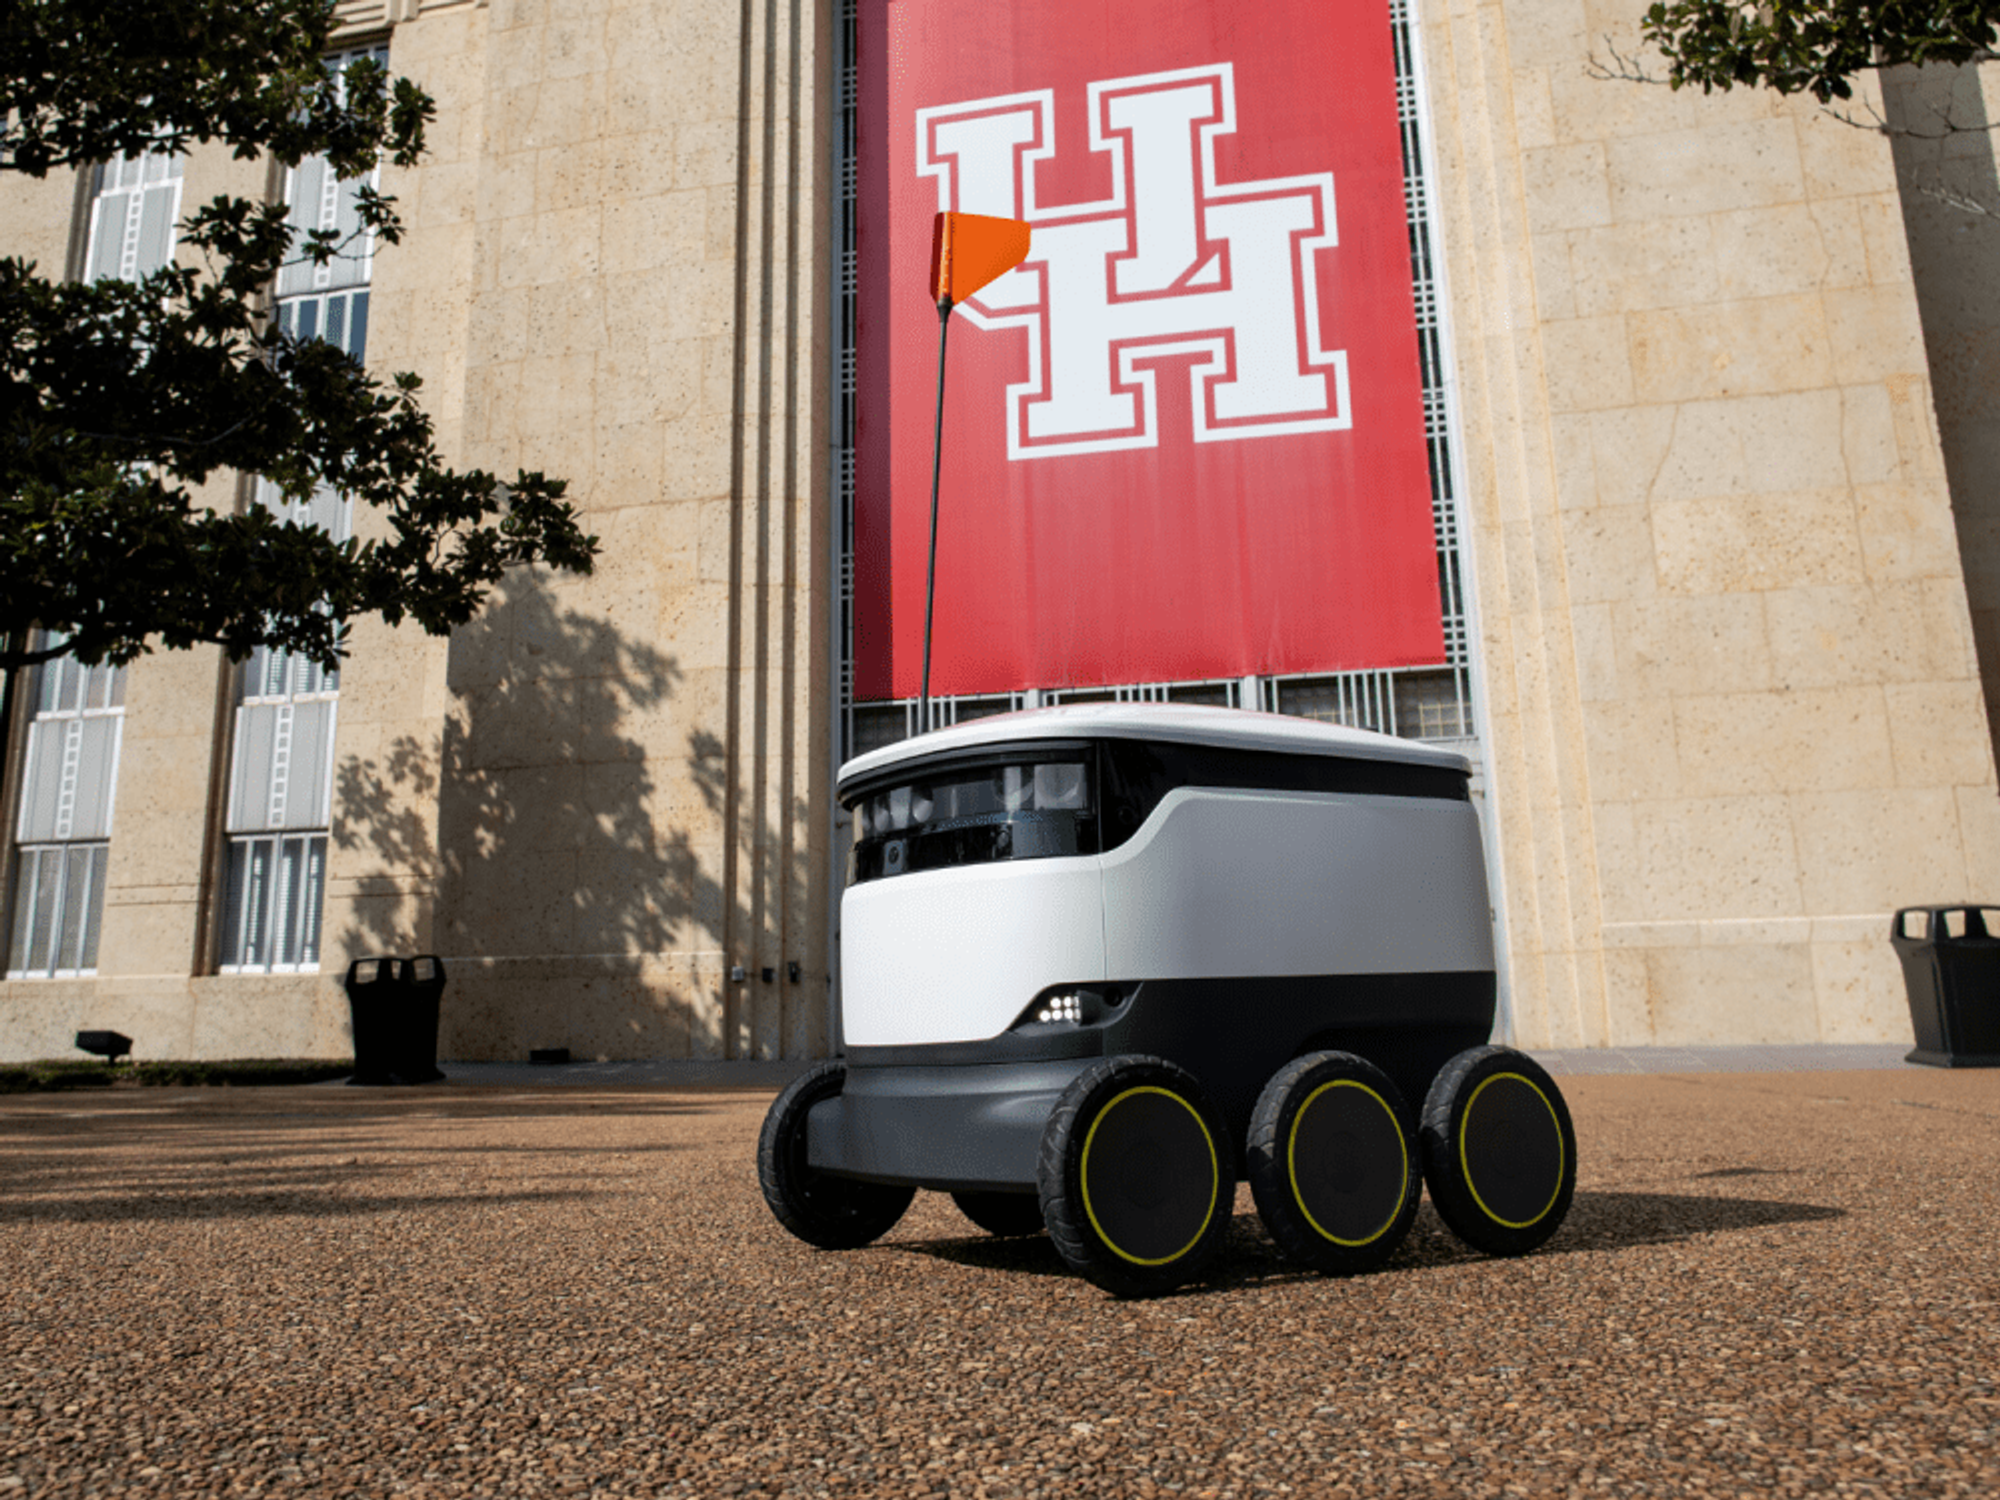 university of houston autonomous delivery robot